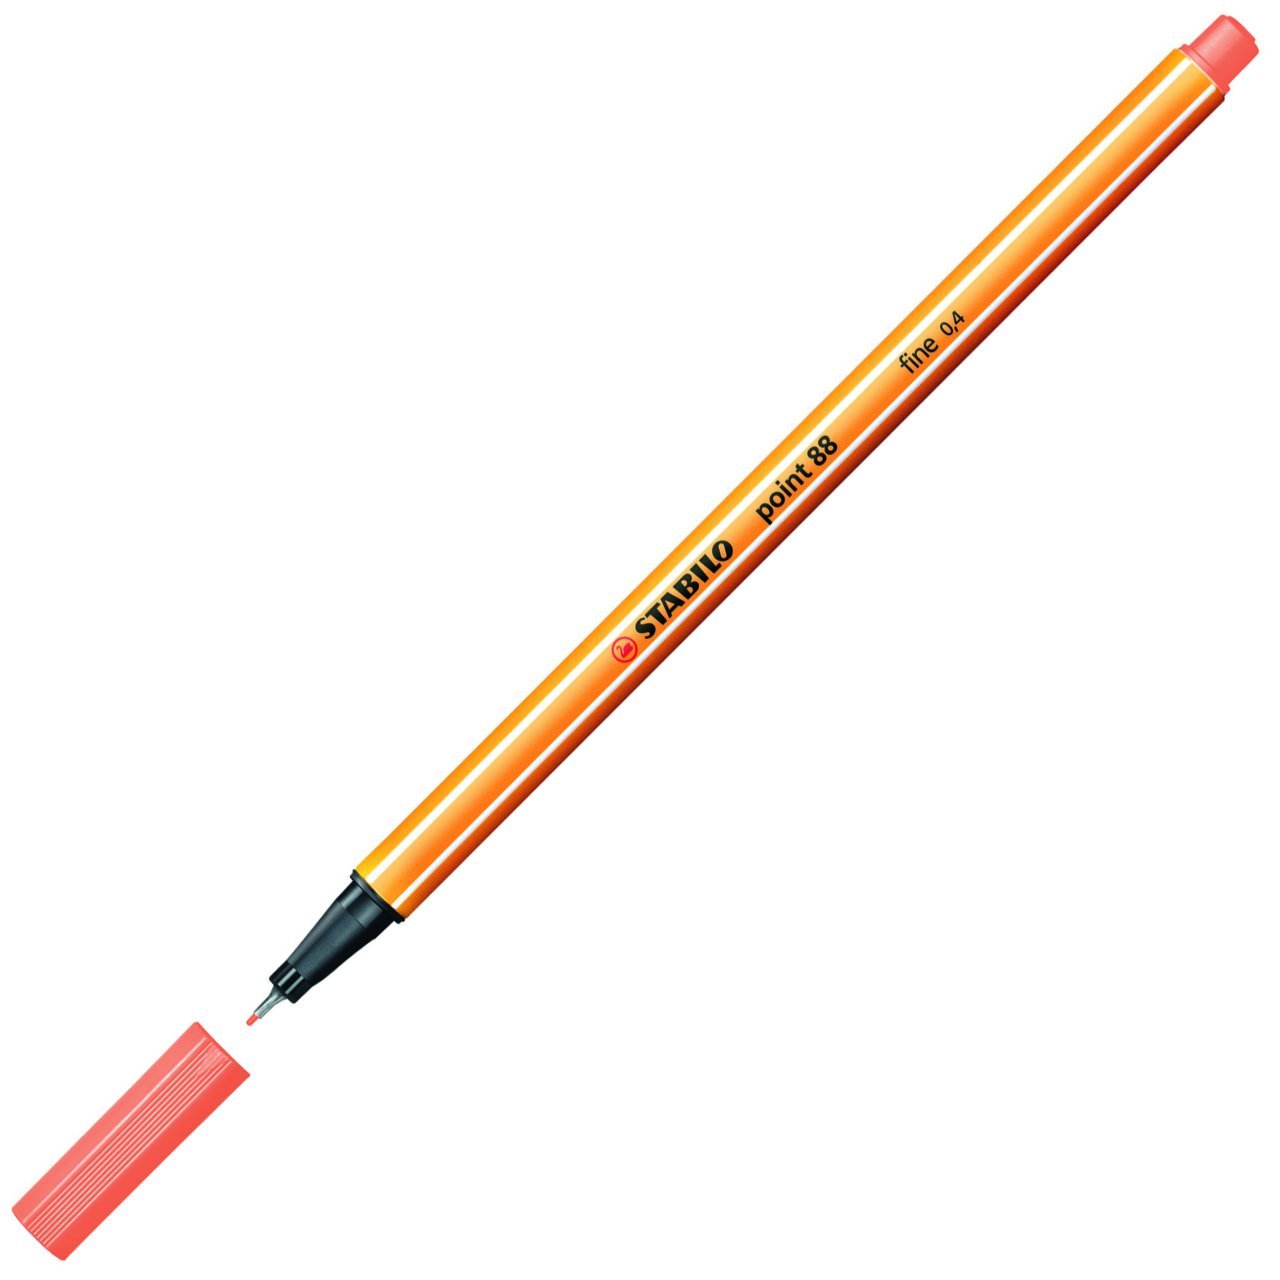 Stabılo Point 88 İnce Uçlu Keçeli Kalem Kayısı